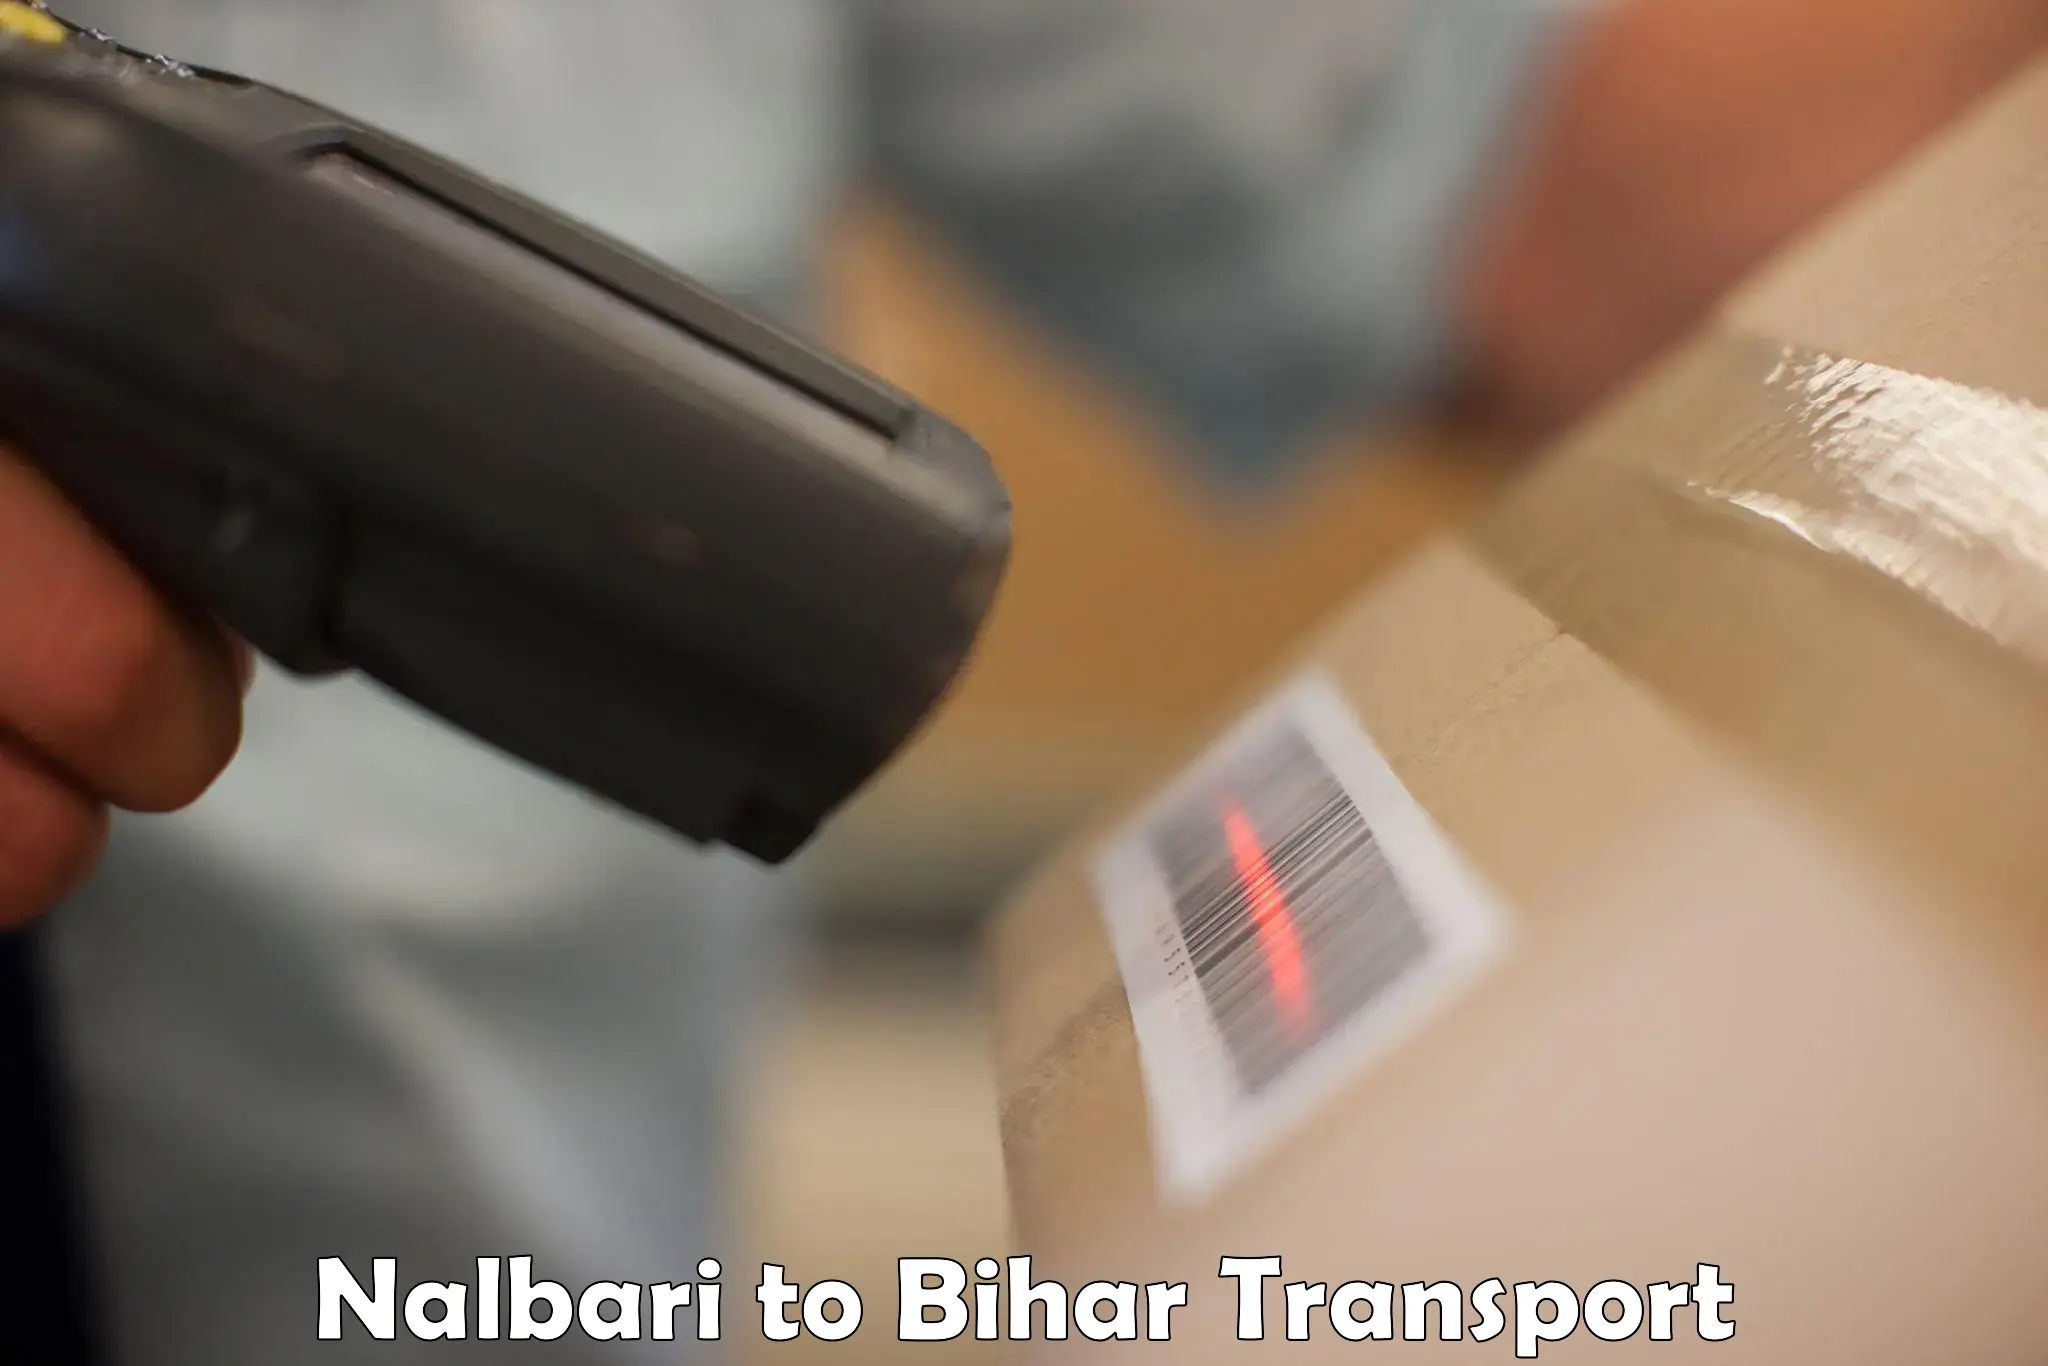 Domestic transport services Nalbari to Mahnar Bazar